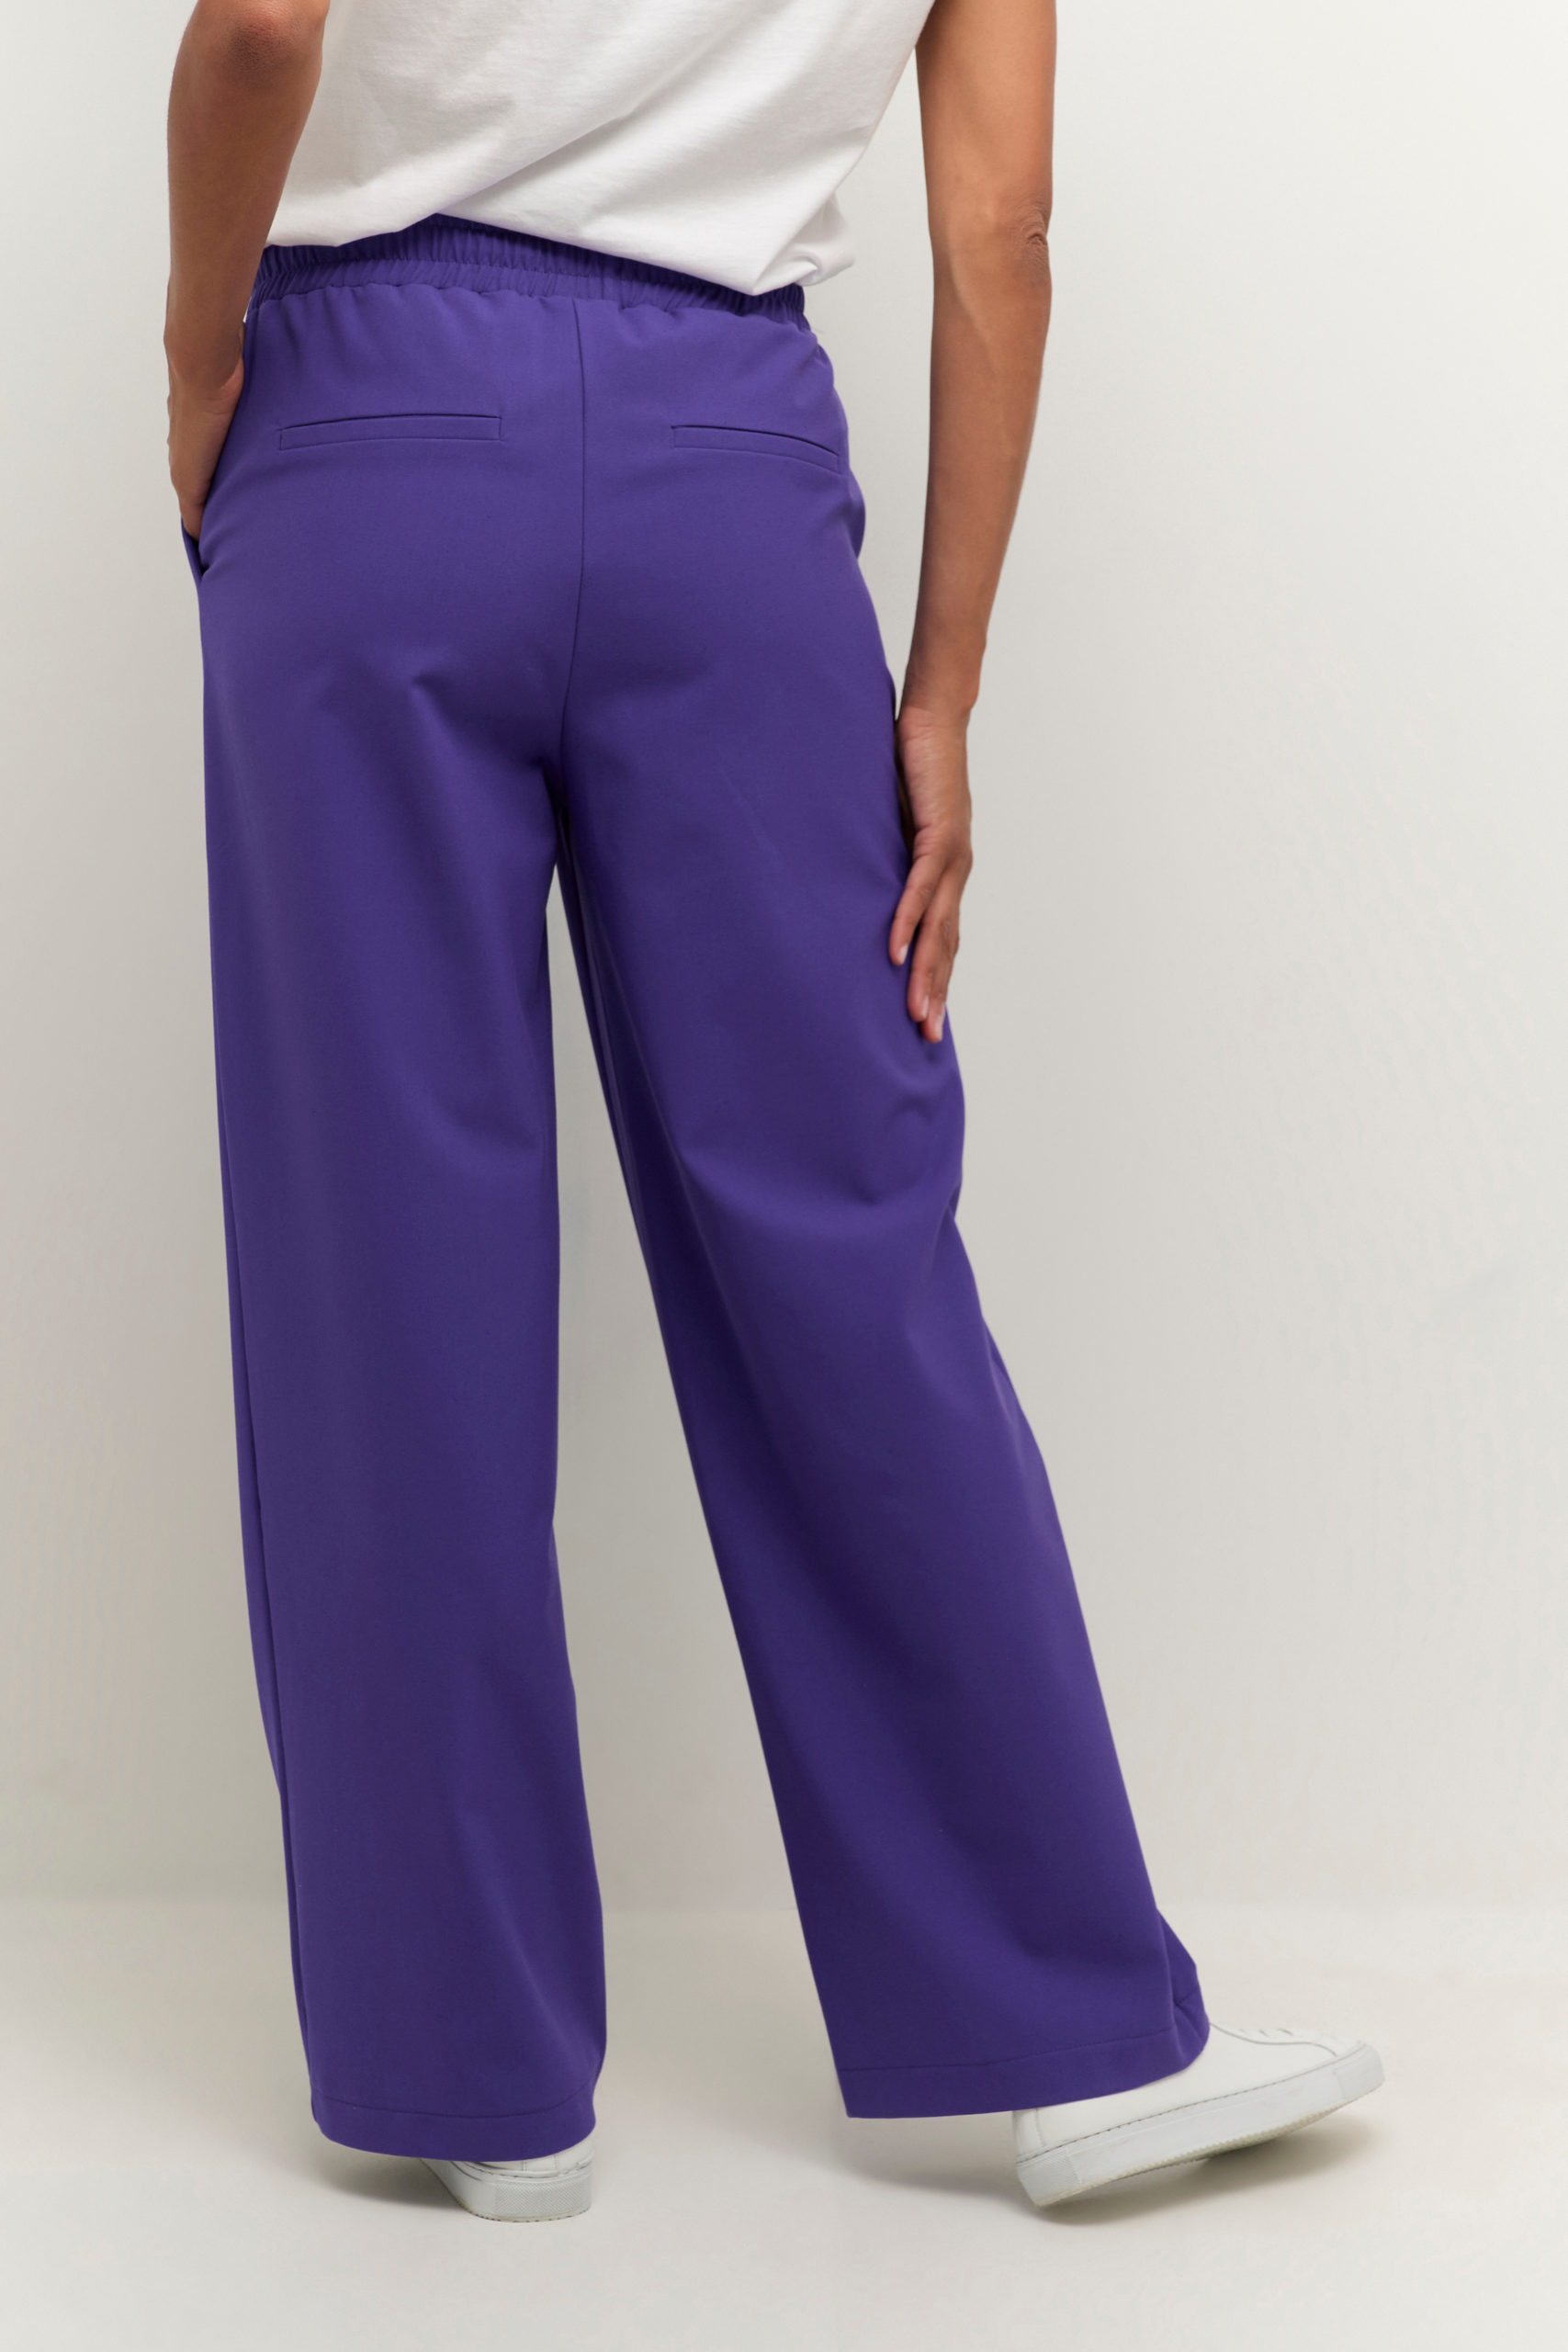 KAcolette Pants Suiting purple back